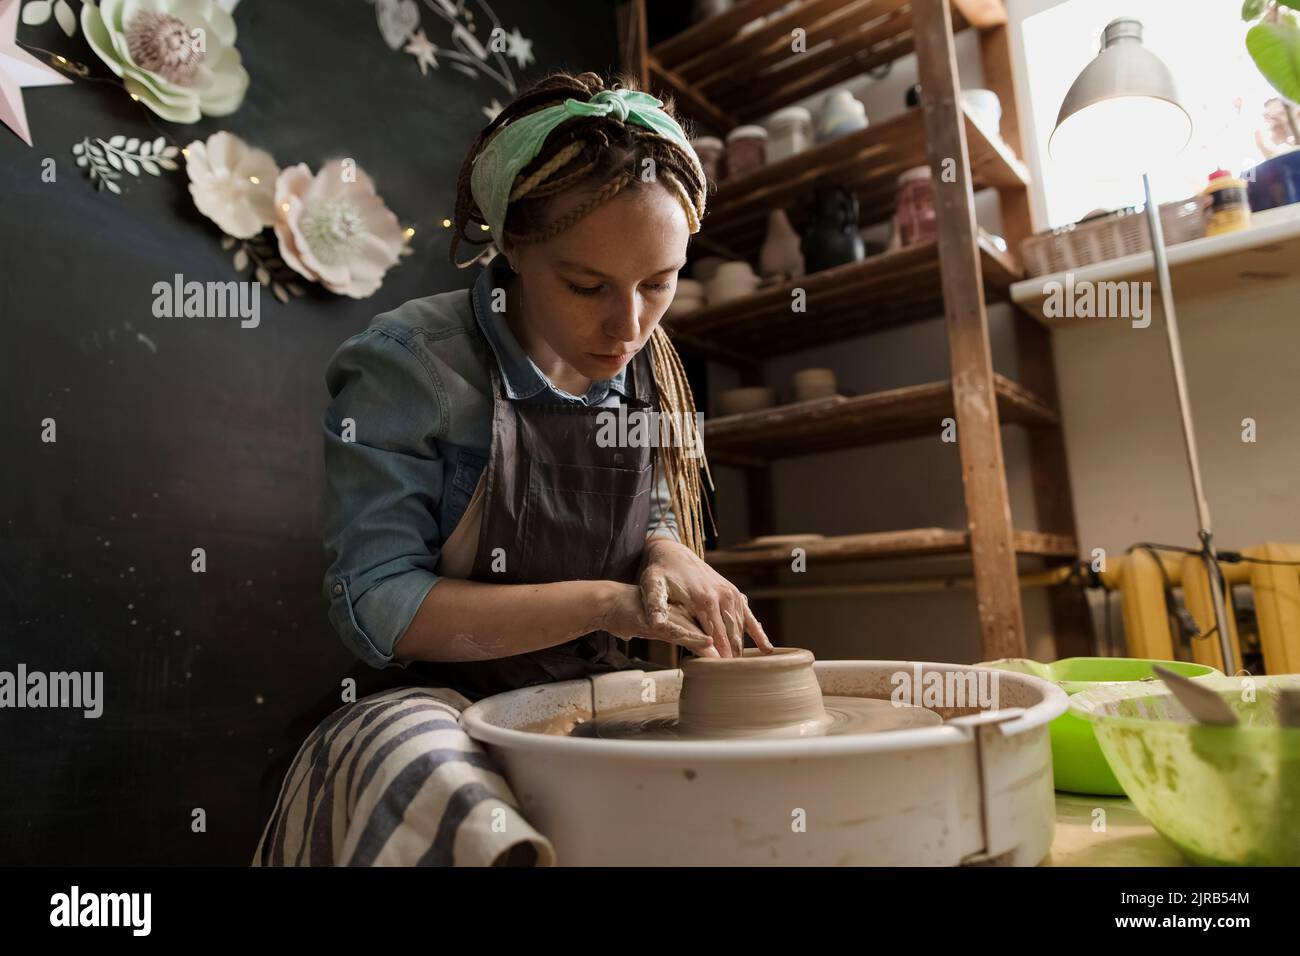 Craftsperson working at workshop Stock Photo